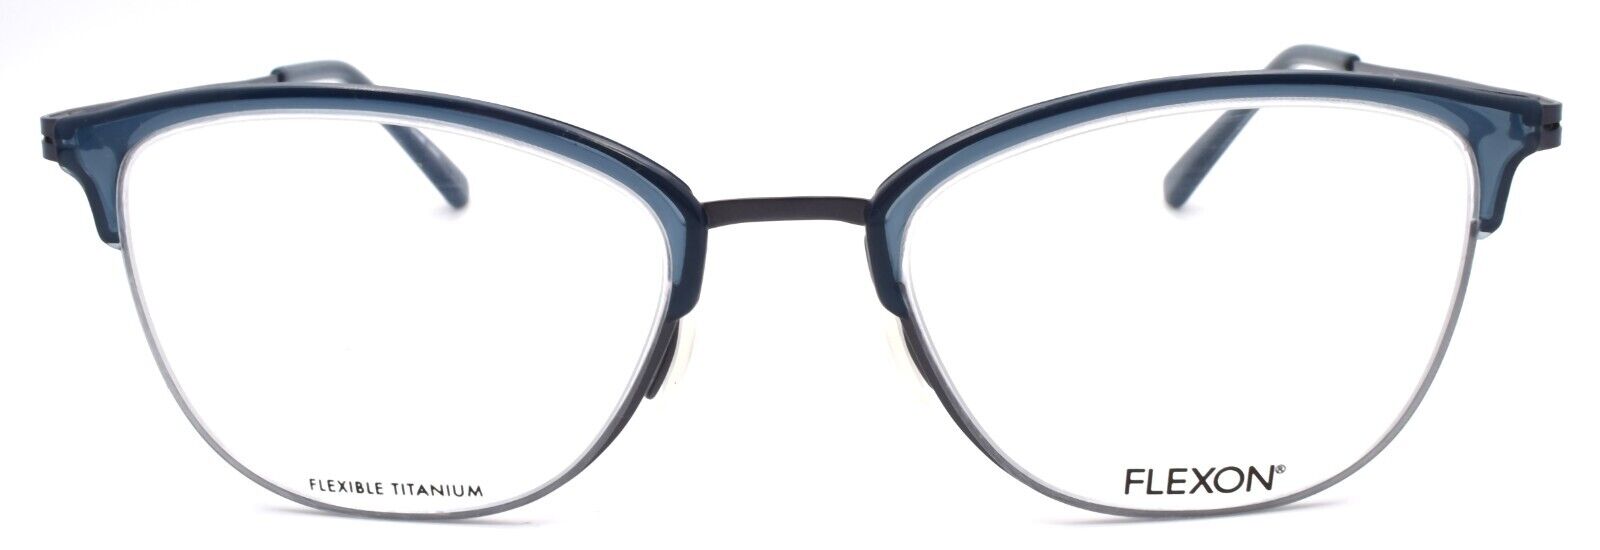 2-Flexon W3023 424 Women's Eyeglasses Frames Blue 52-20-140 Flexible Titanium-883900205351-IKSpecs